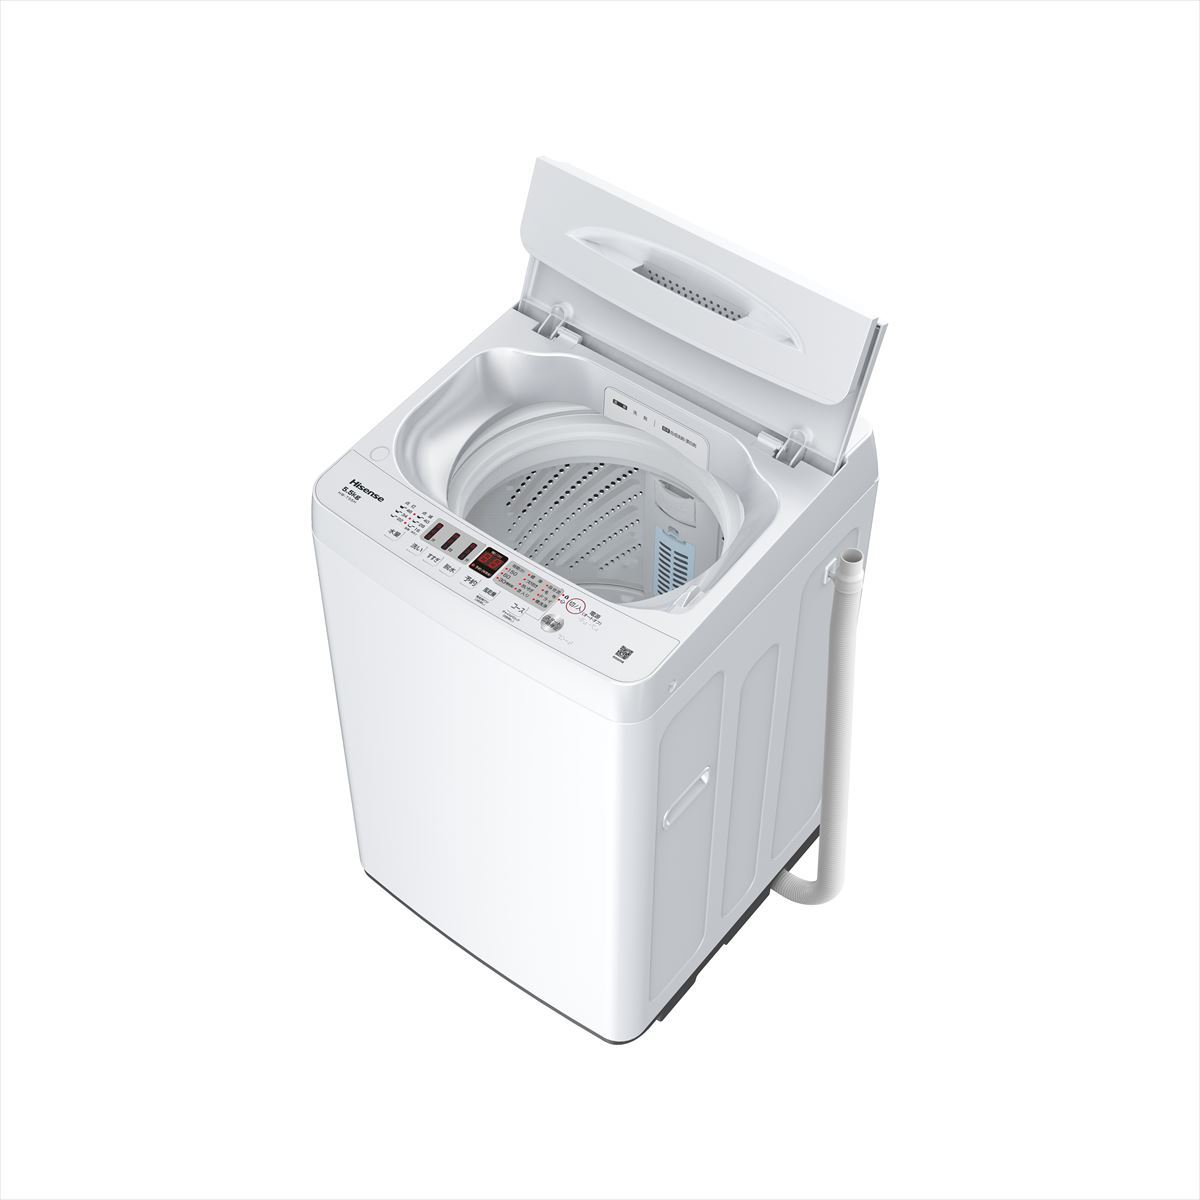 ハイセンス、豊富な洗濯コースを備えた500mm幅のスリム全自動洗濯機 | マイナビニュース